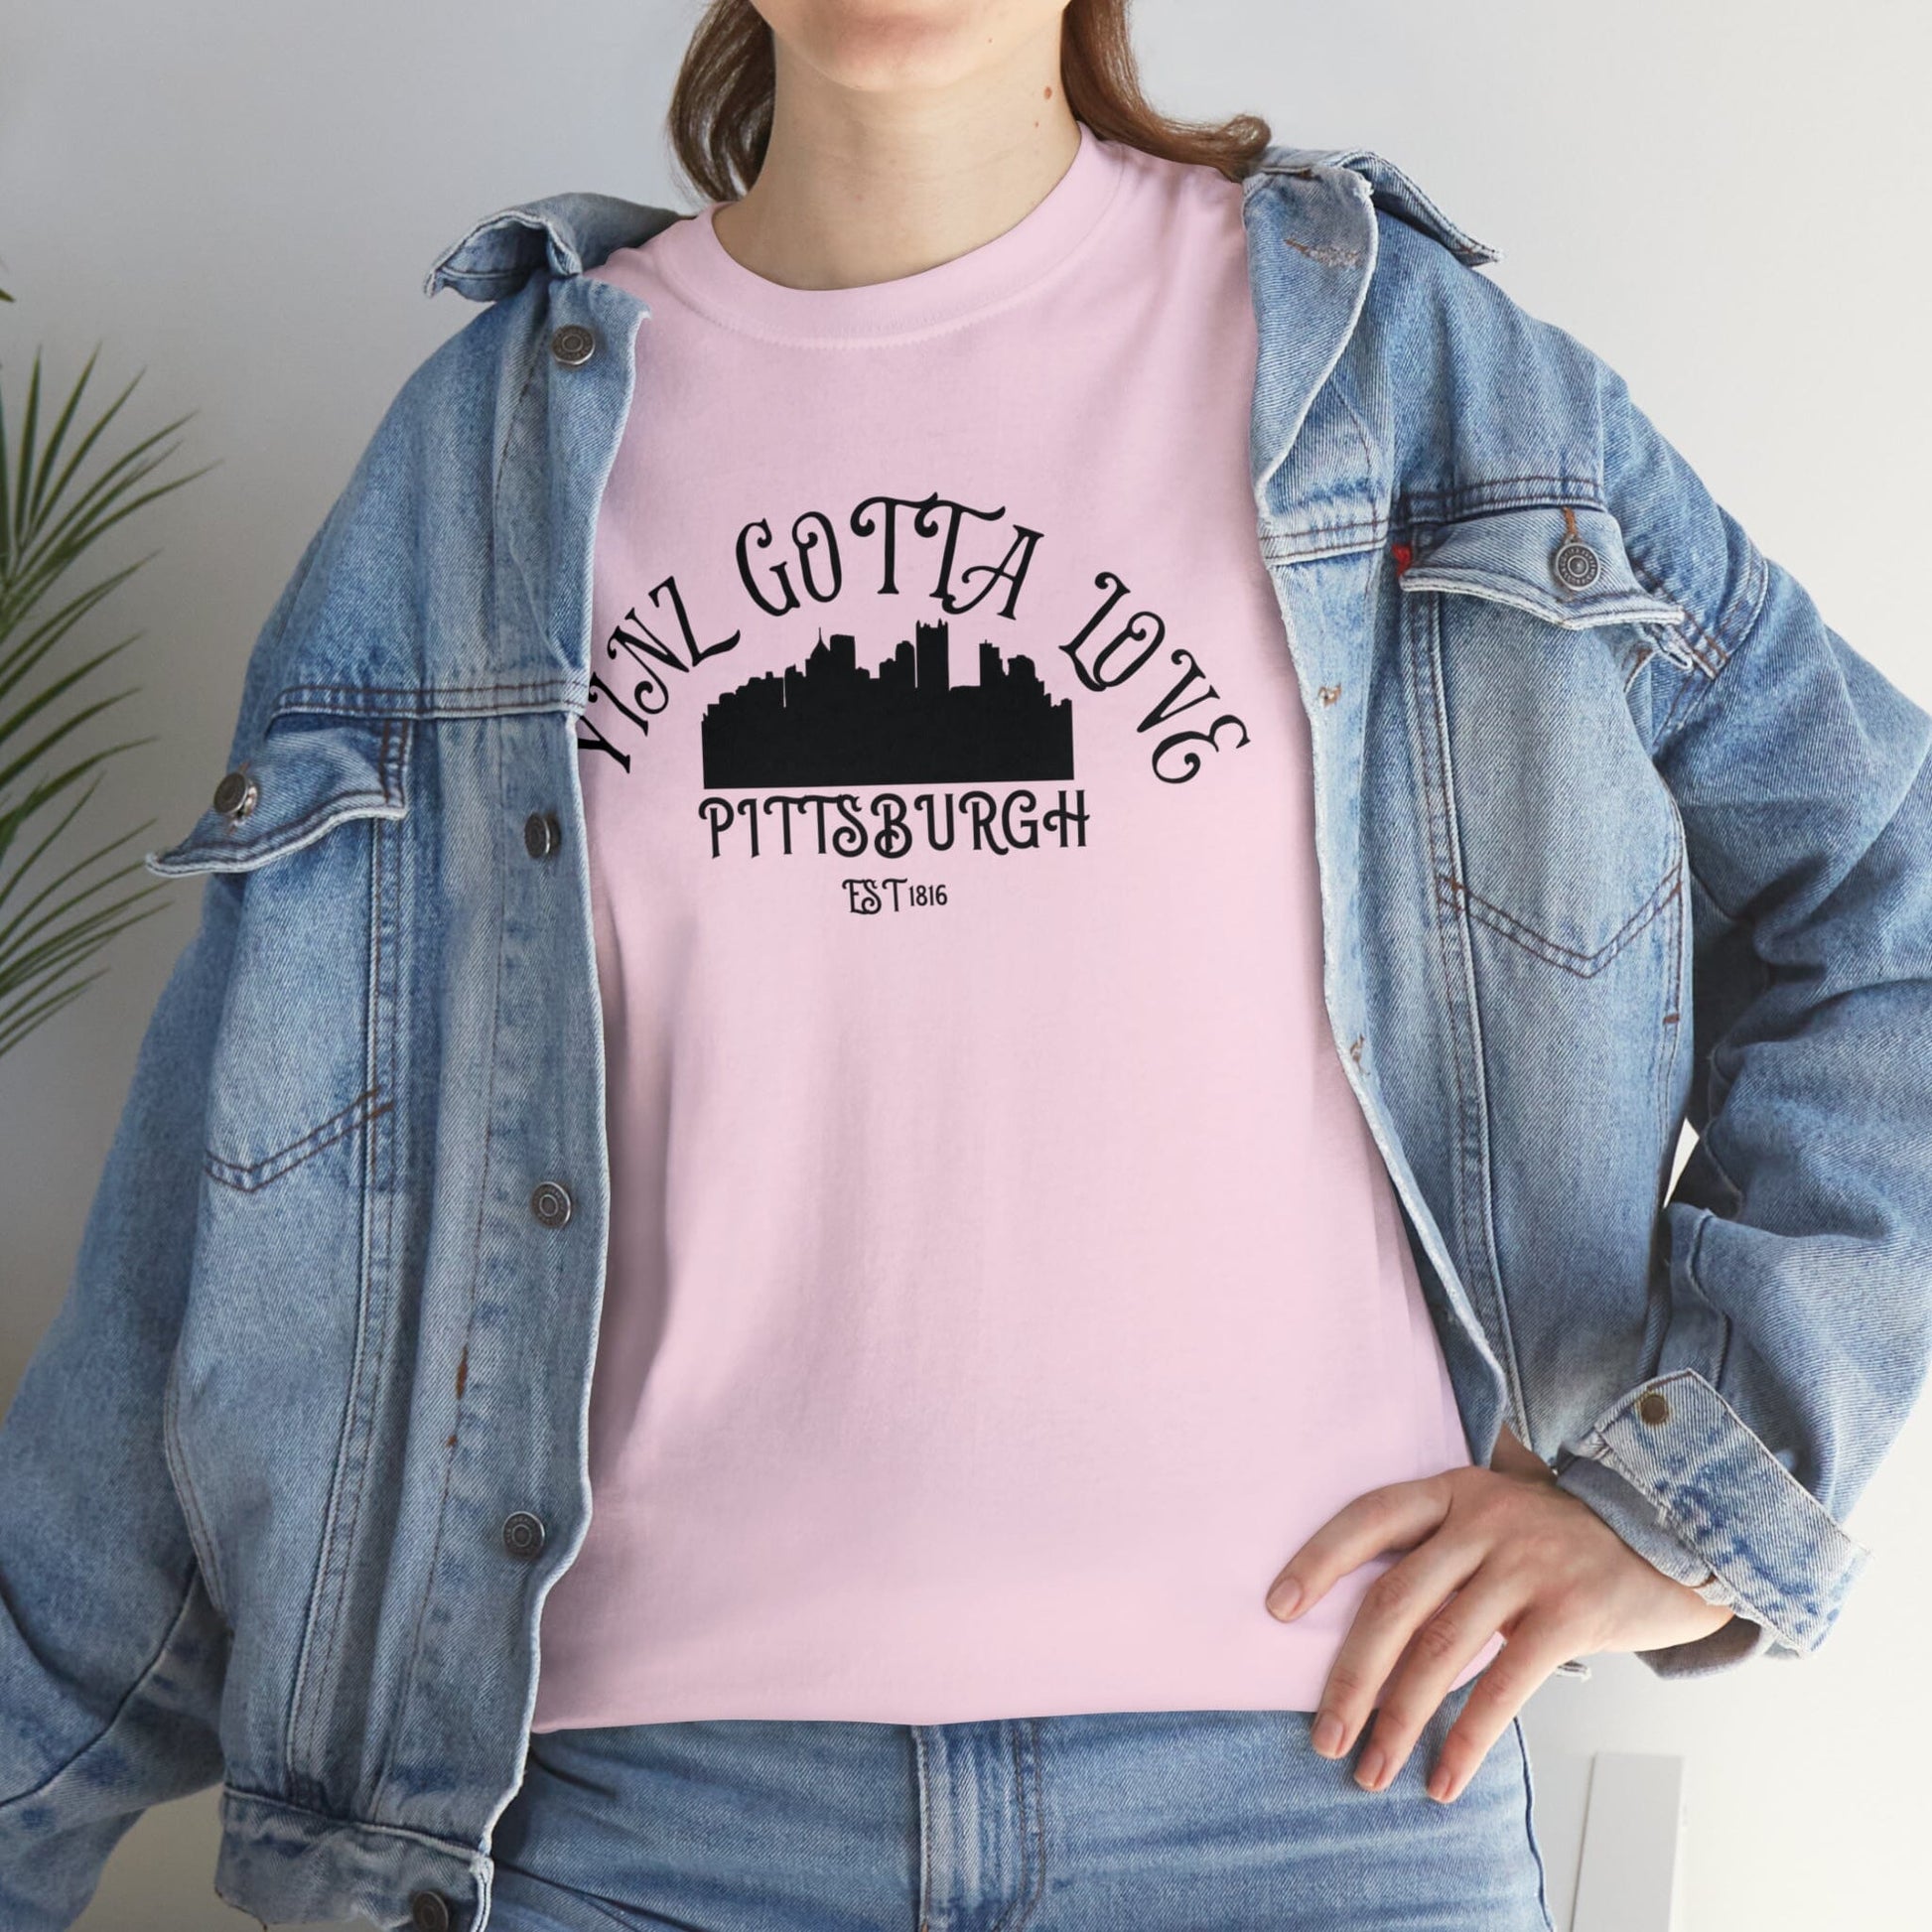 Yinz Gotta Love Pittsburgh T-Shirt T-Shirt Printify Light Pink S 